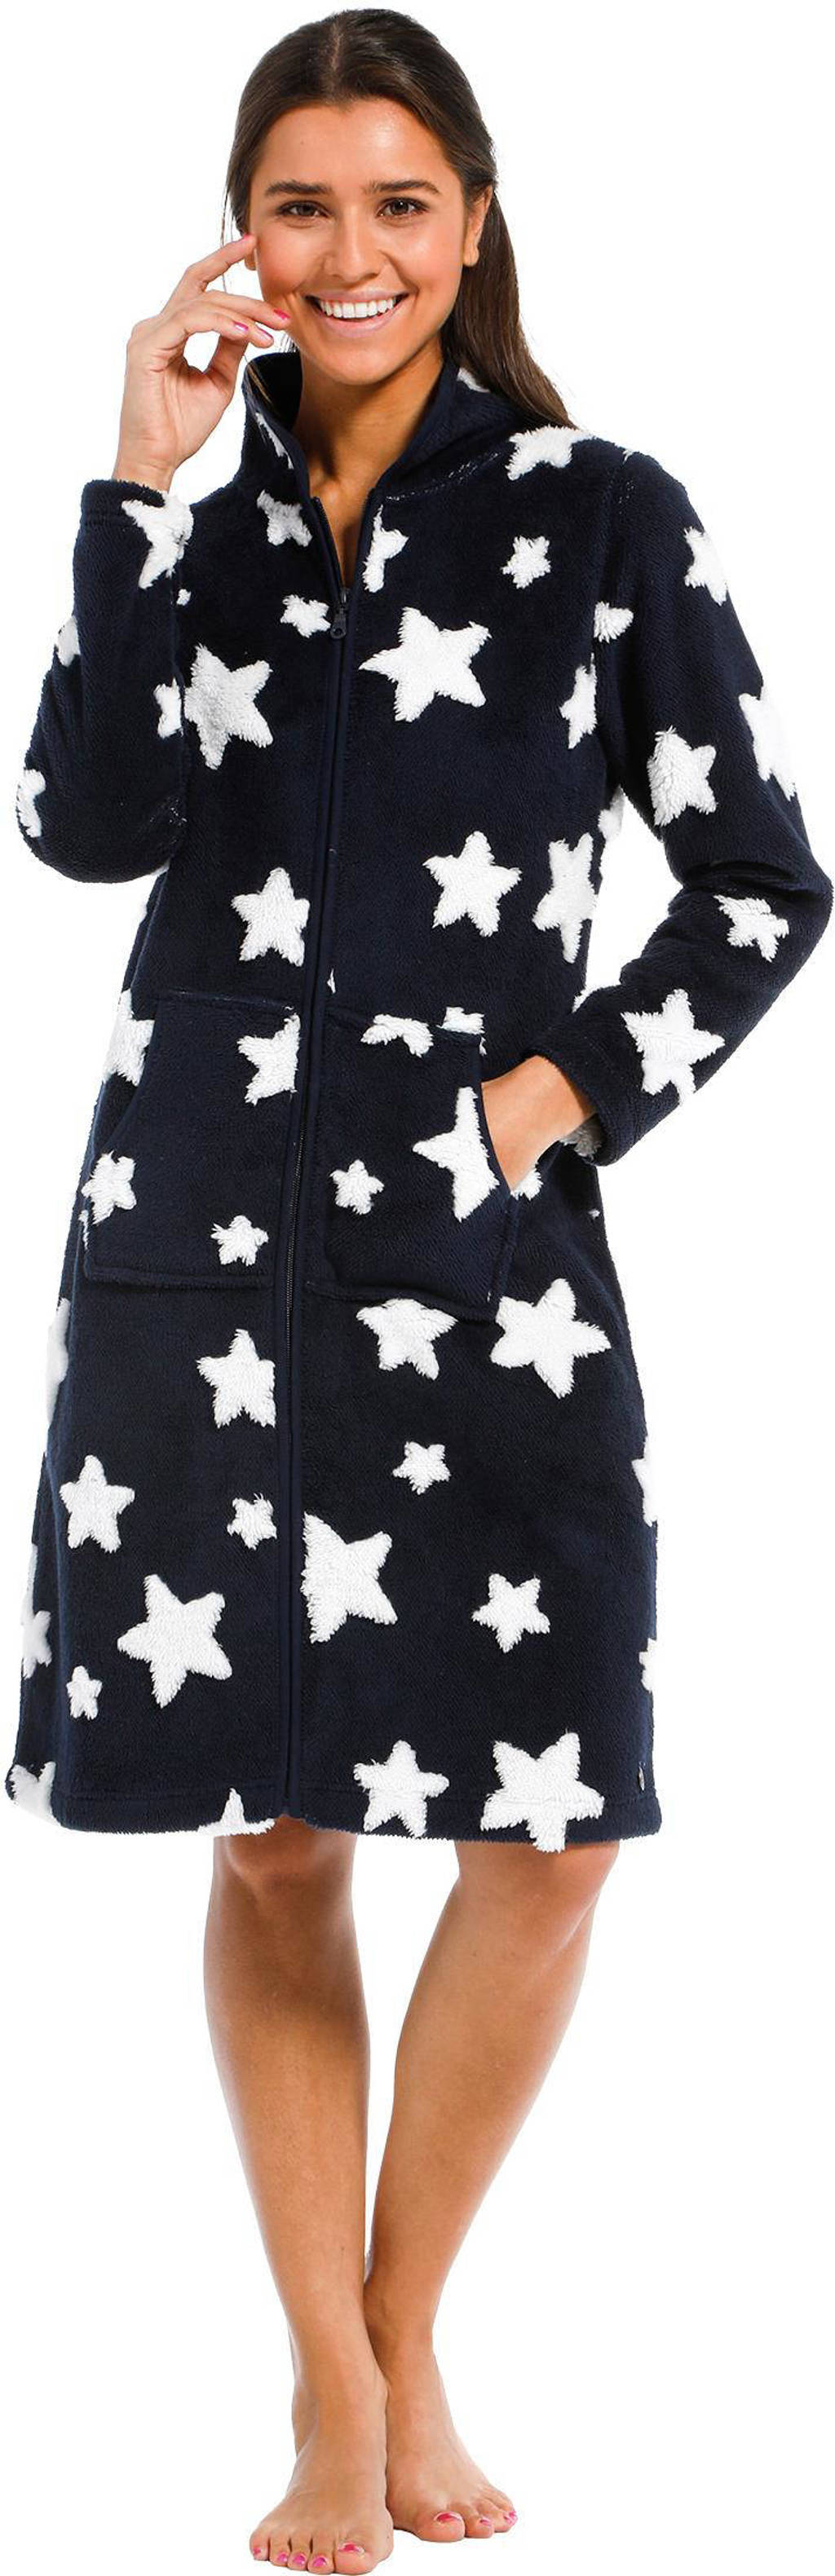 Rebelle fleece badjas met ritssluiting en sterren donkerblauw/wit, Donkerblauw/wit